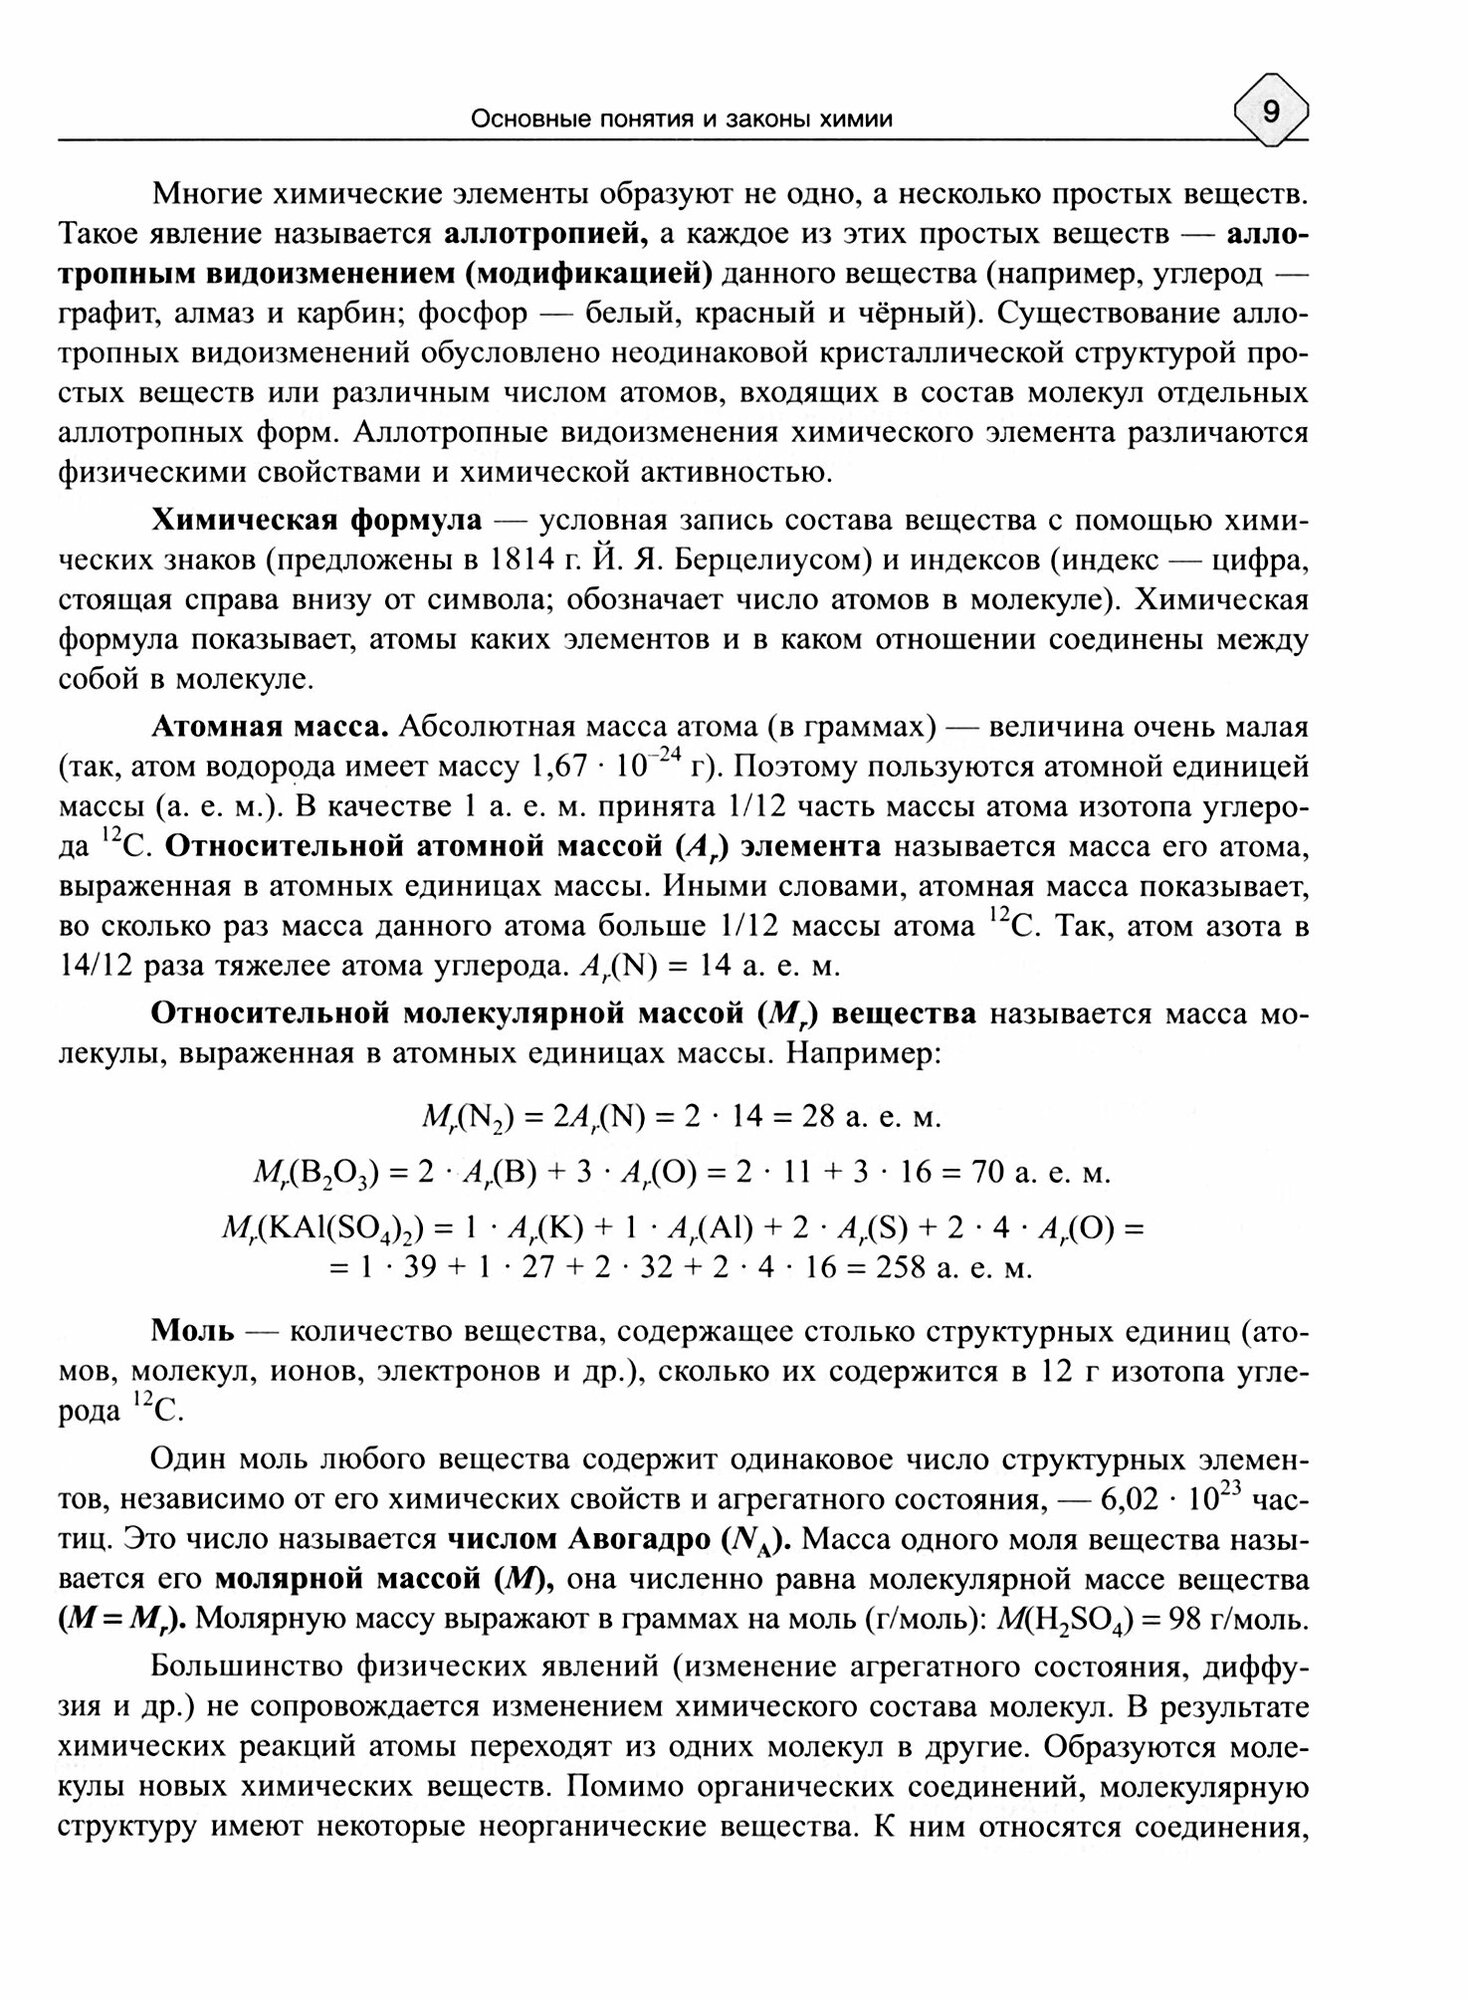 Основы общей химии. Теория и решение задач для подготовки к ЕГЭ. 8-11 классы - фото №3